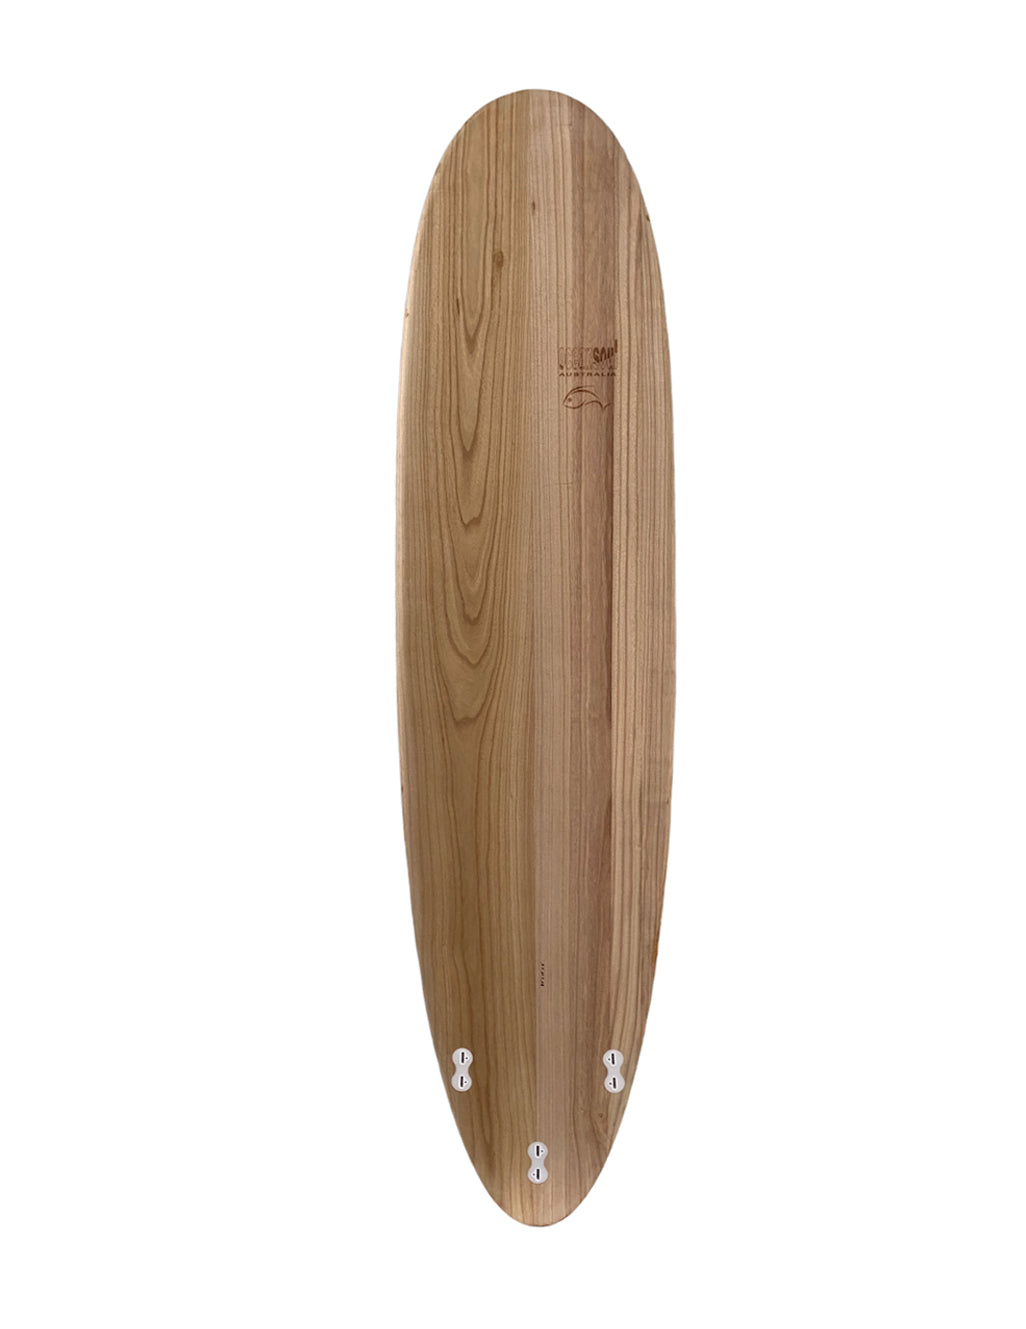 Ocean Soul Wood Wrapped Epoxy Surfboard - 7'6